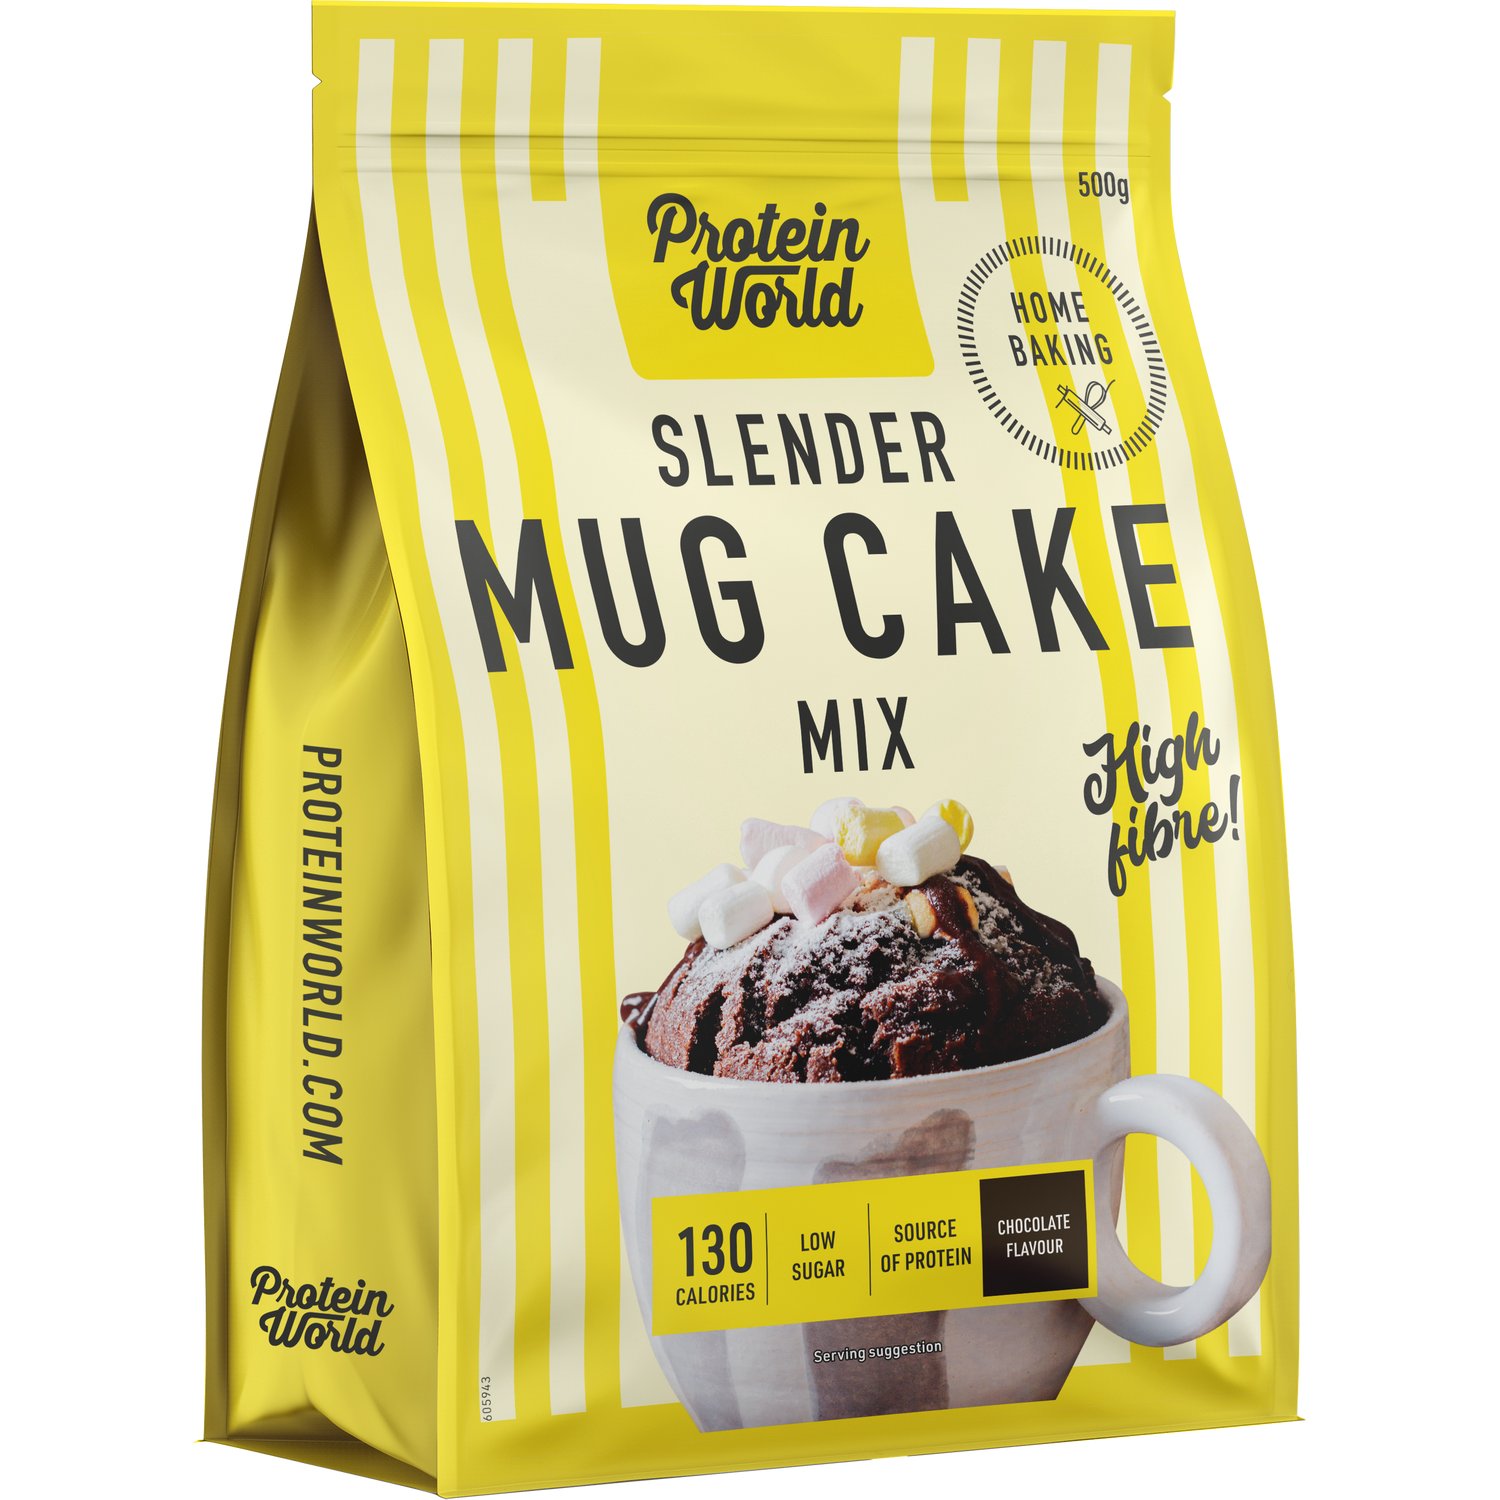 Protein World Slender Mug Cake Mix Image